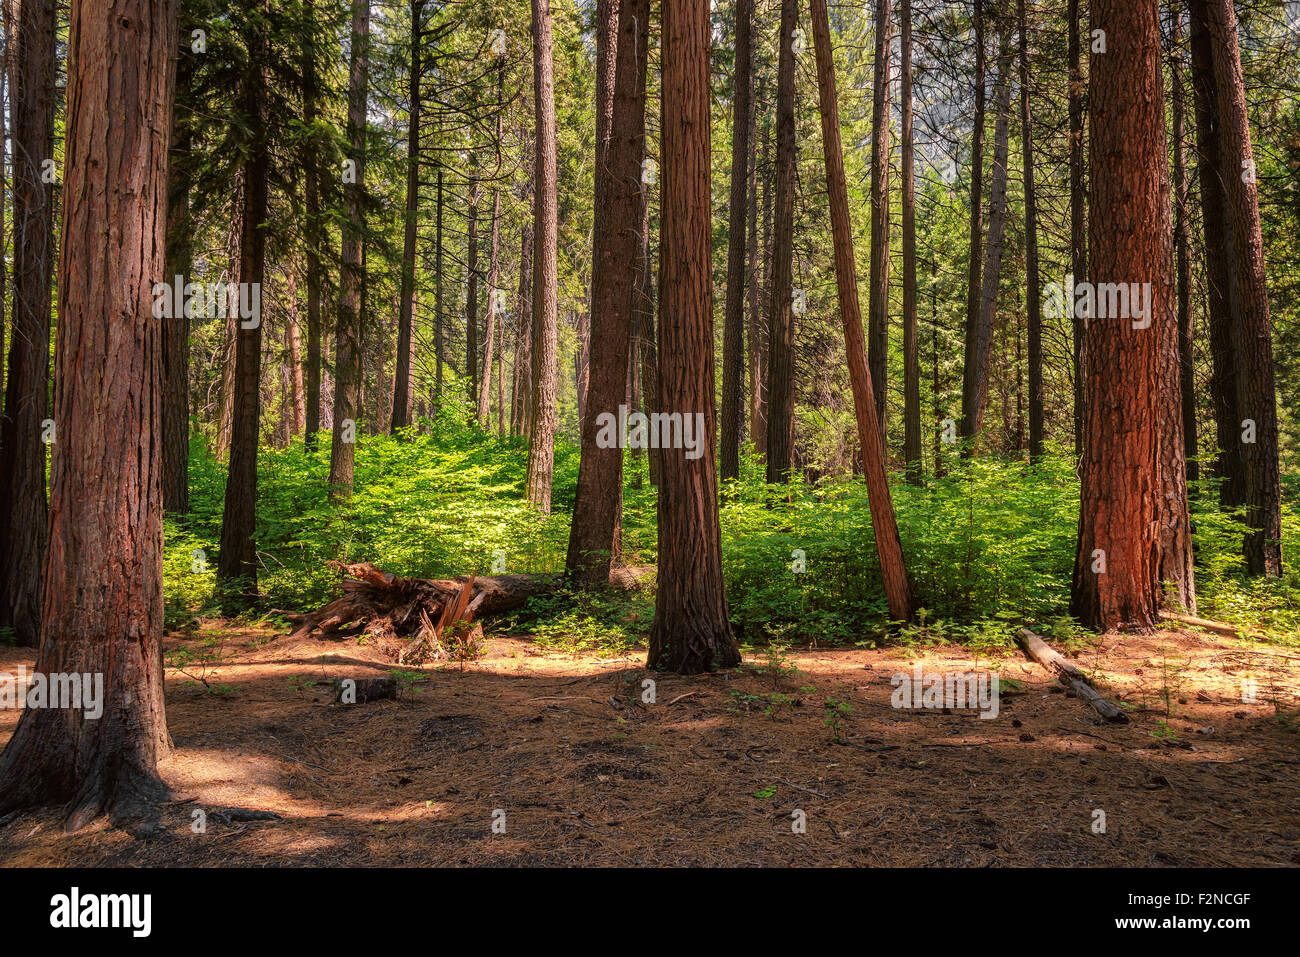 Los famosos árboles Sequoia están de pie en el Parque Nacional Yosemite, montañas de Sierra Nevada de California Foto de stock